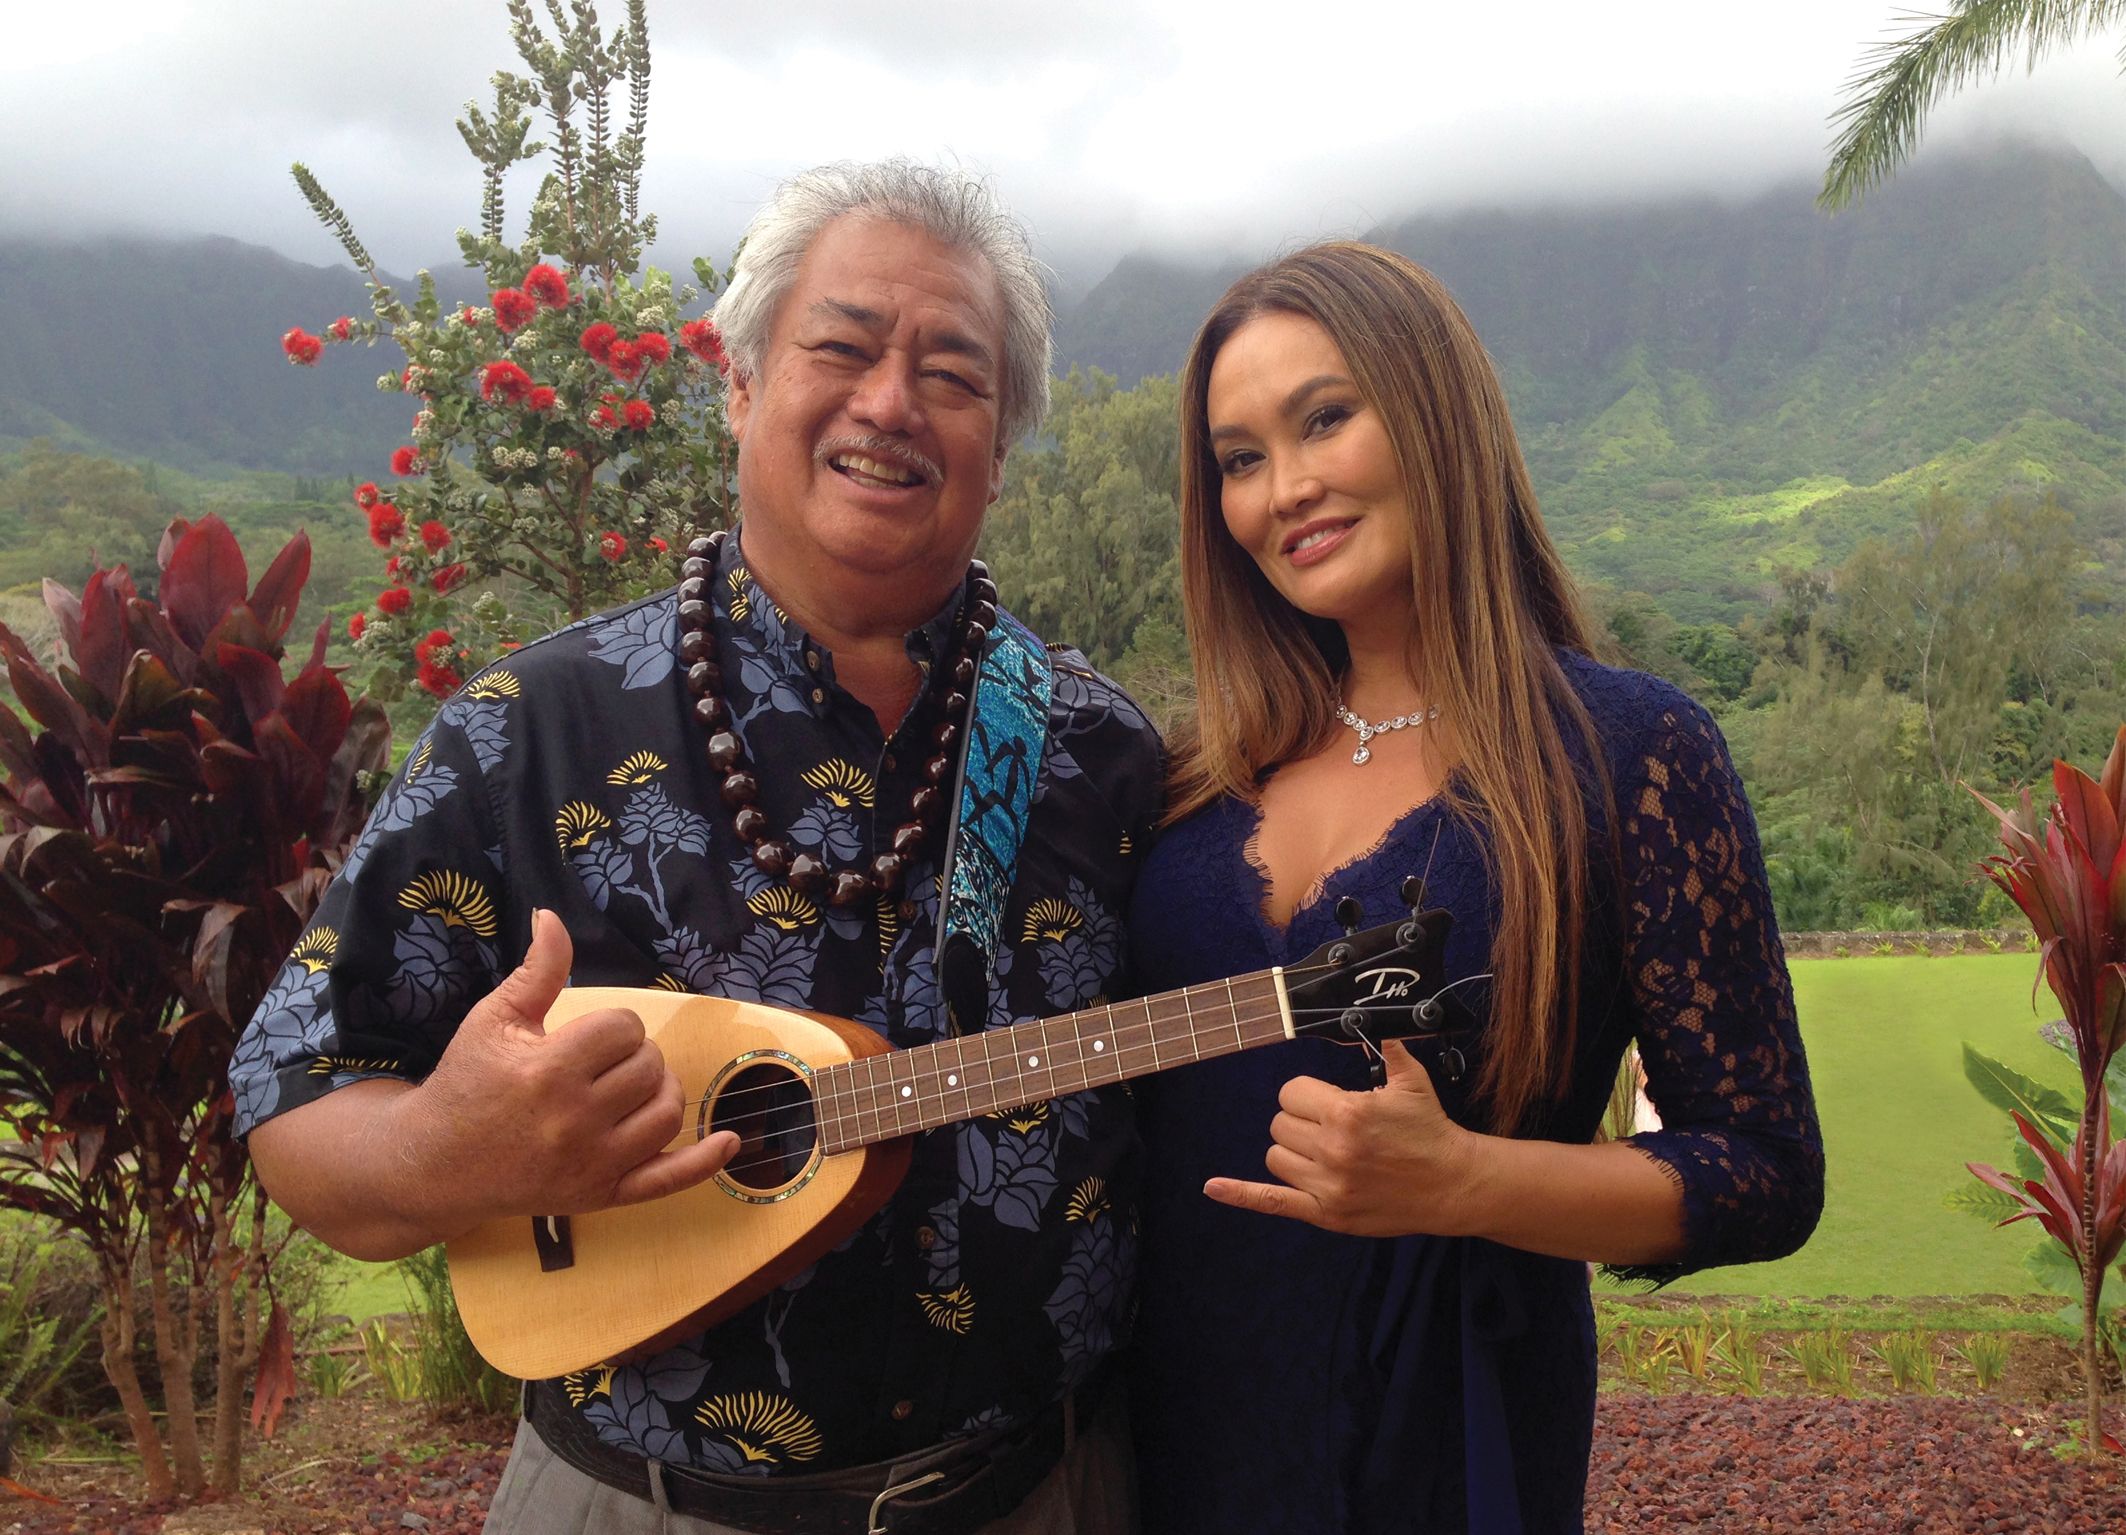 Masters of Hawaiian Music